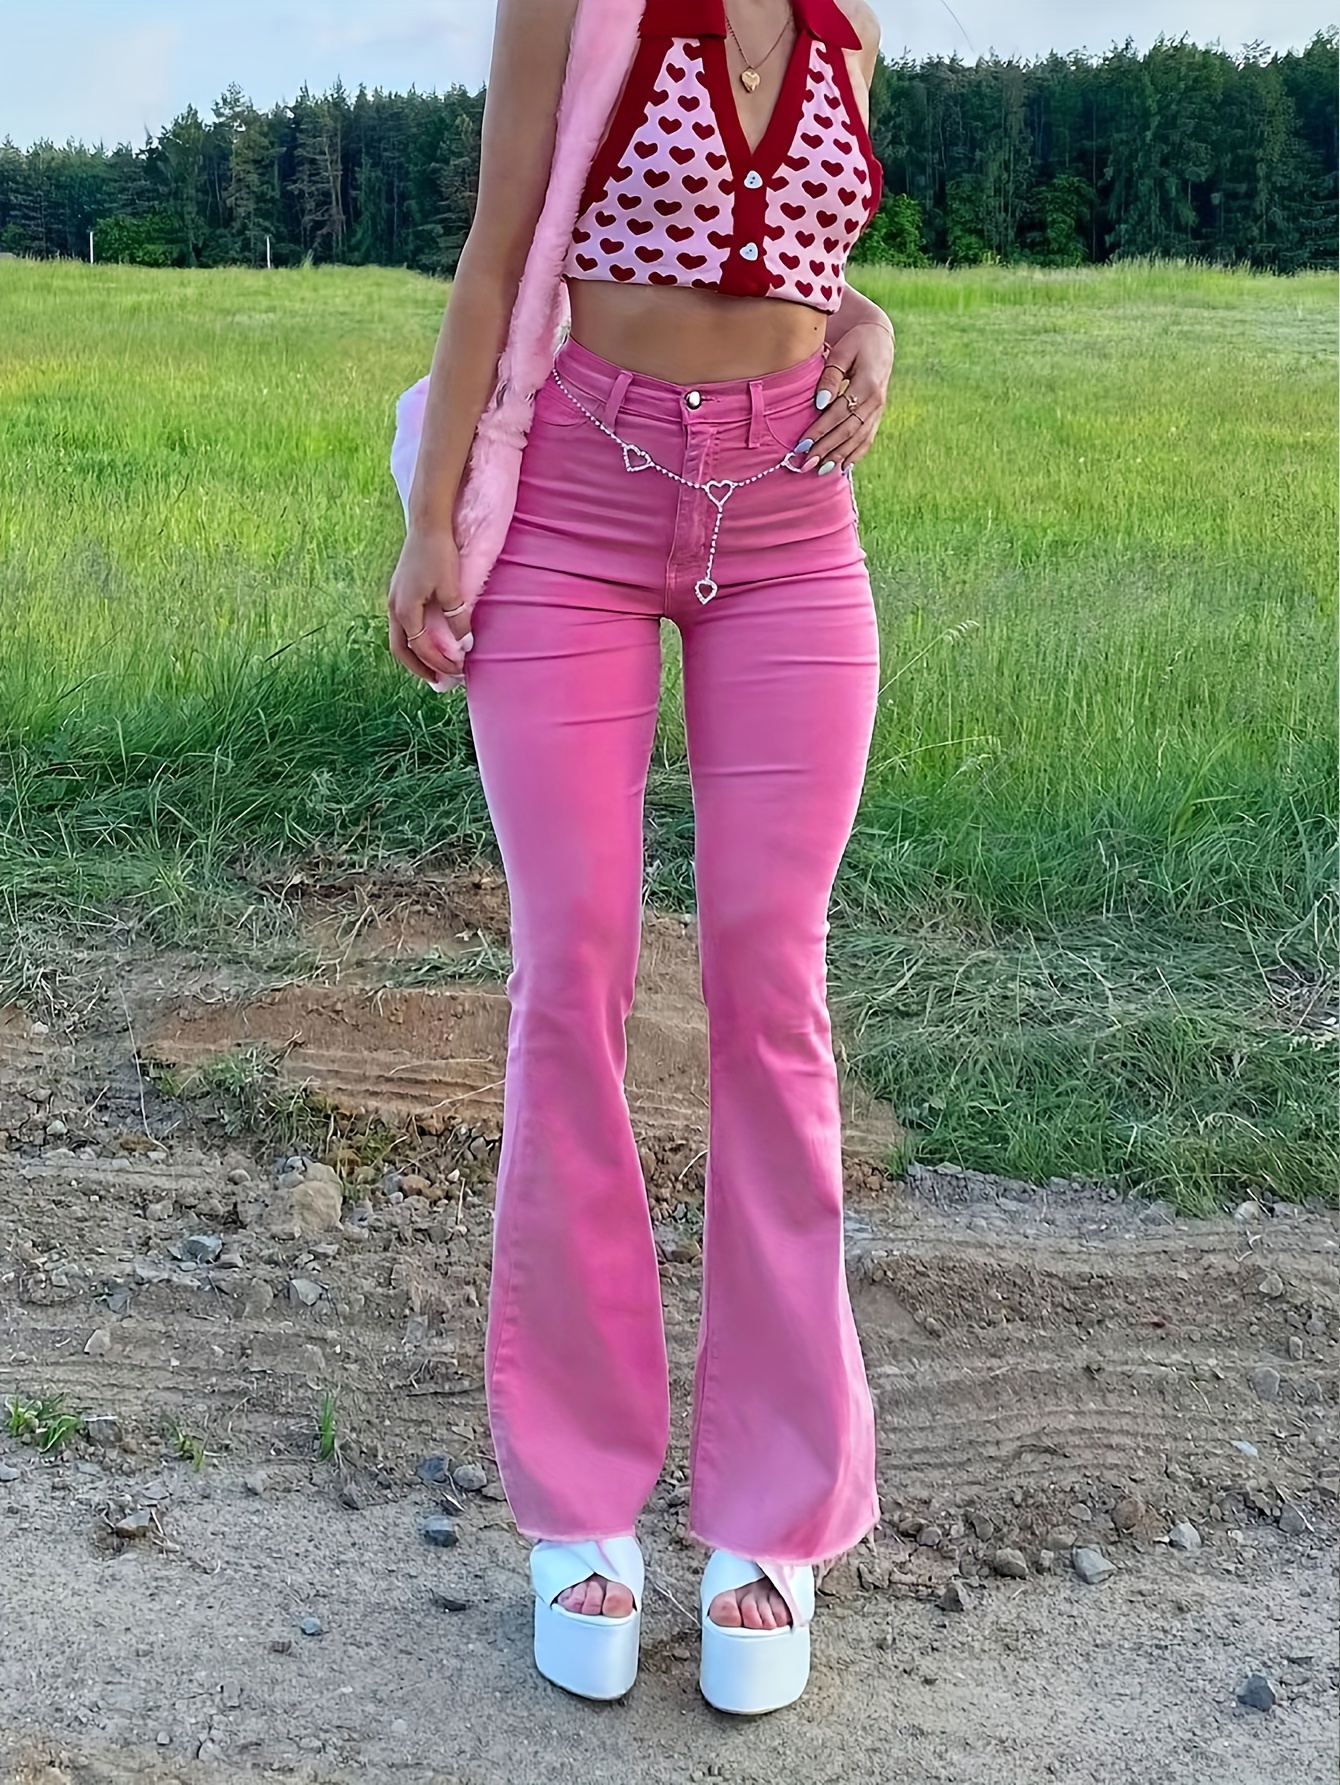 Pantalones de mezclilla acampanados para mujer, jeans rasgados, pantalones  de pierna ancha, pantalones casuales acampanados para mujer (color rosa